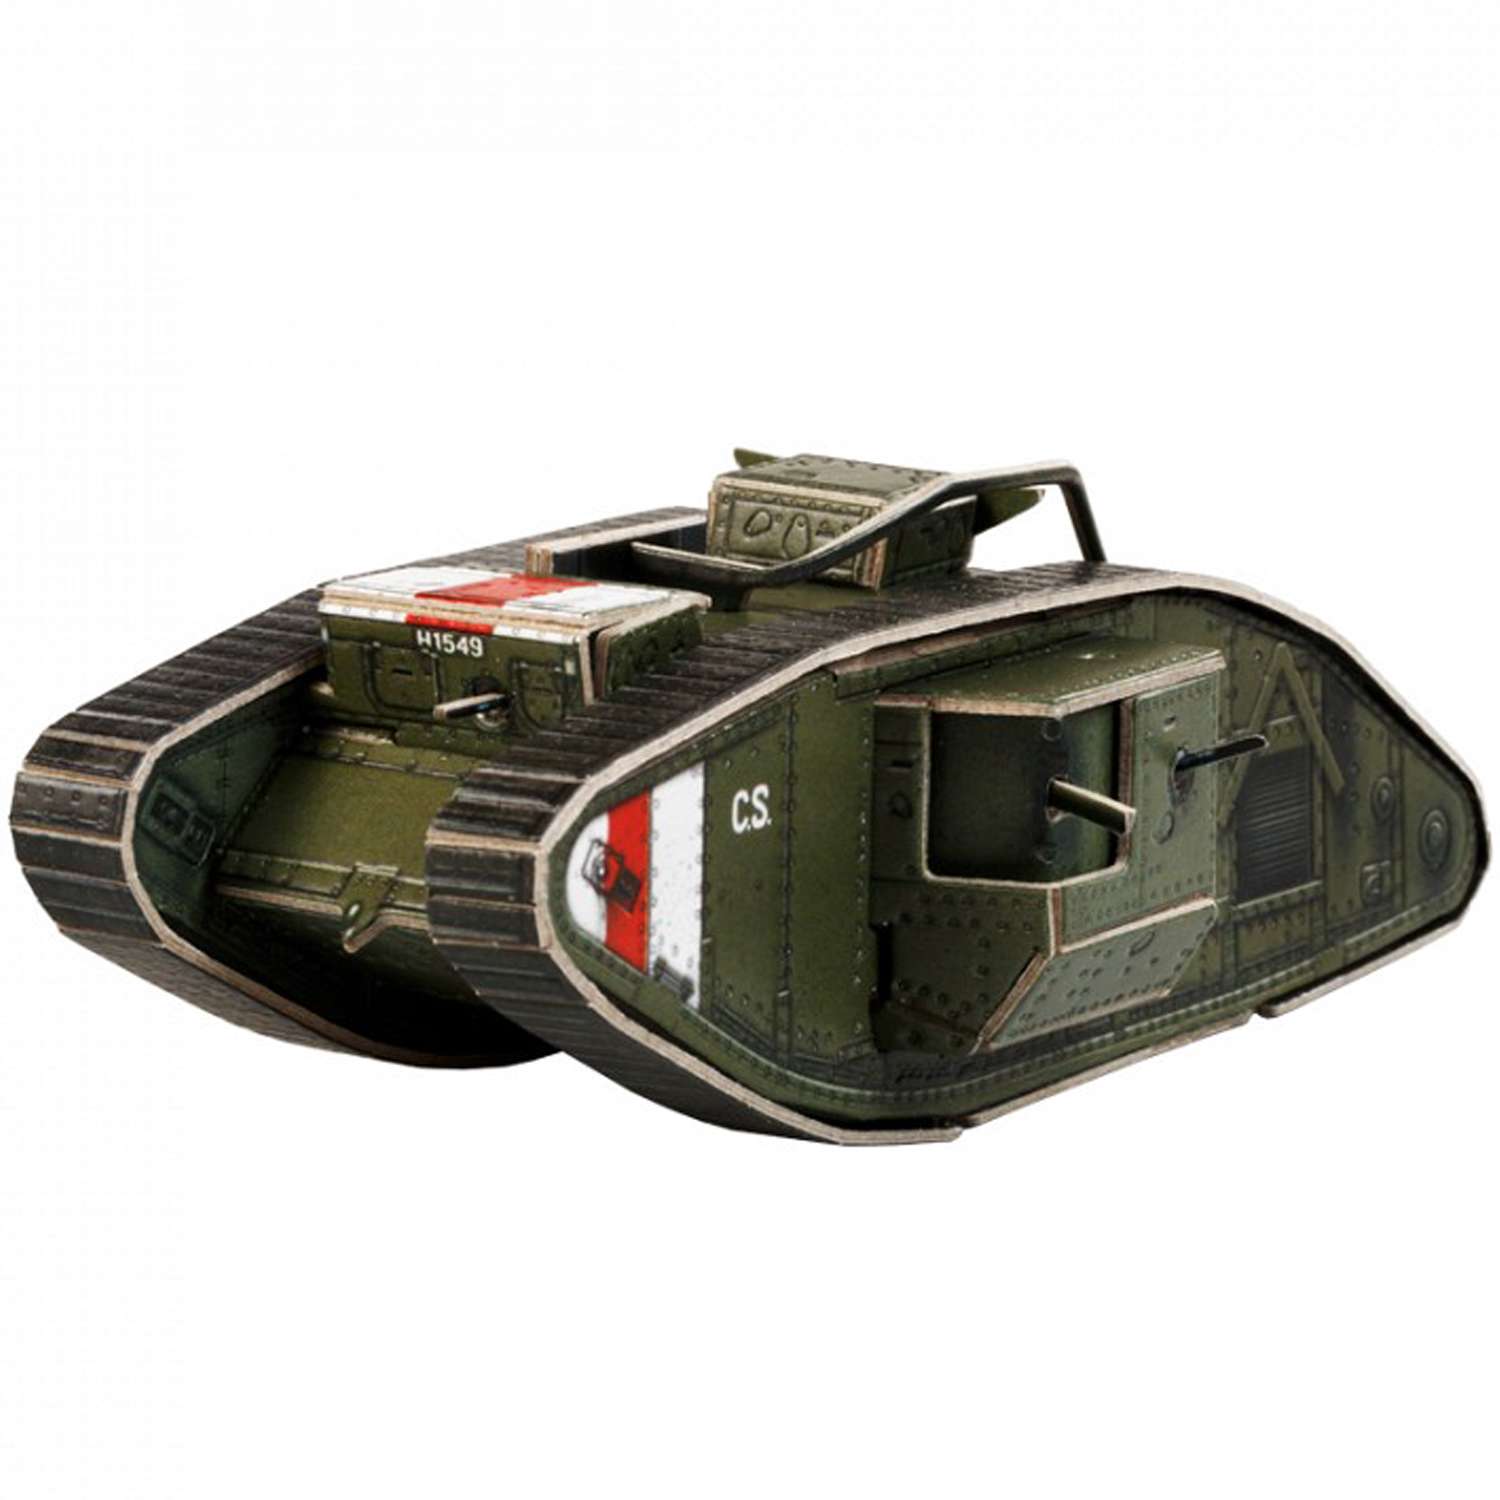 Сборная модель Умная бумага Бронетехника Mark V тяжелый танк Великобритания 575-1 575-1 - фото 1